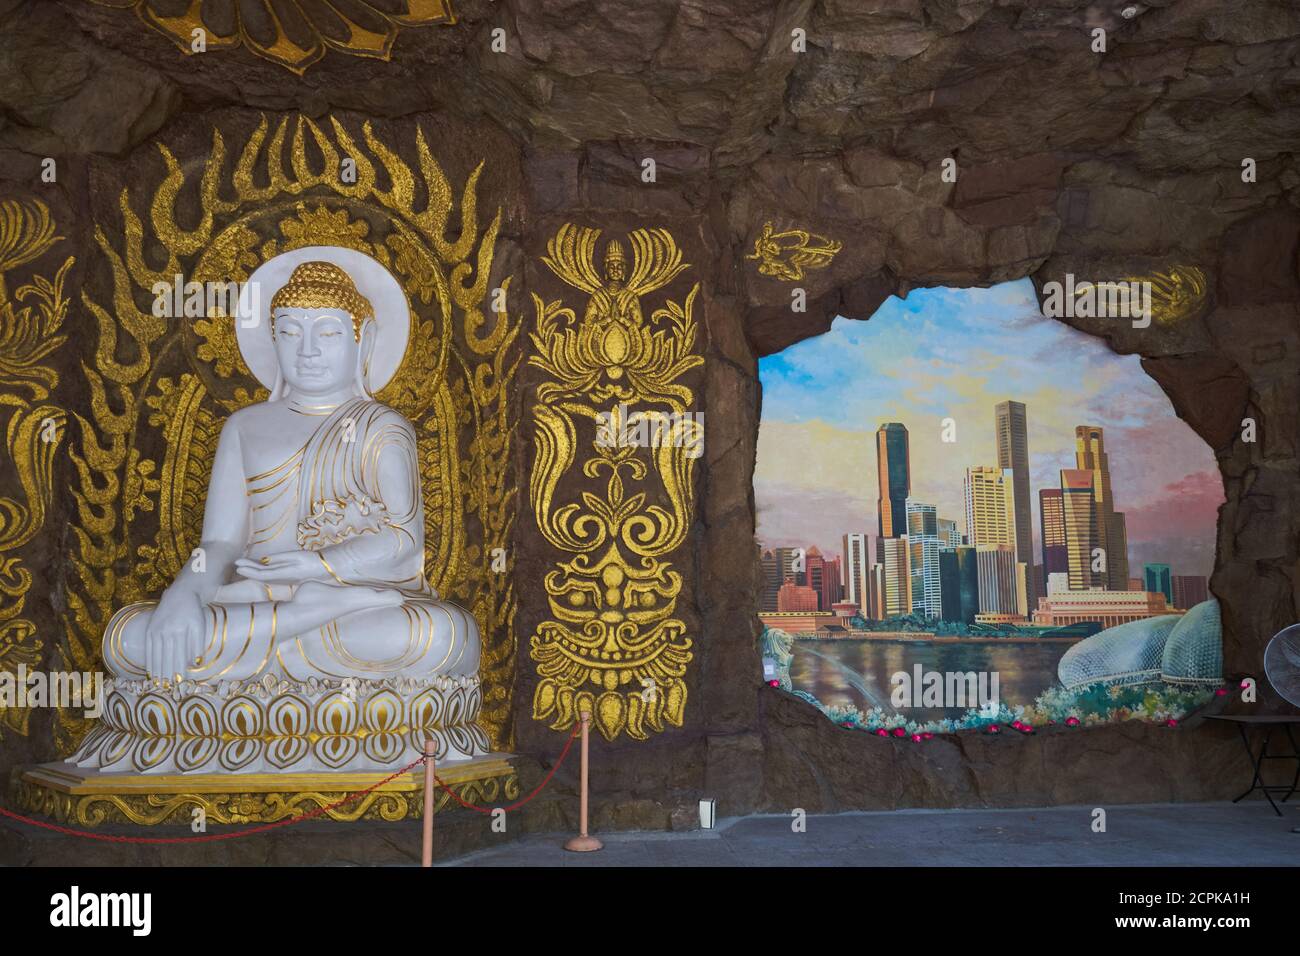 Une statue de Bouddha et une fresque du quartier des affaires de Singapour, une sorte de juxtaposition à la religion ; Société bouddhiste Sagaramudra, Geylang, Singapour Banque D'Images